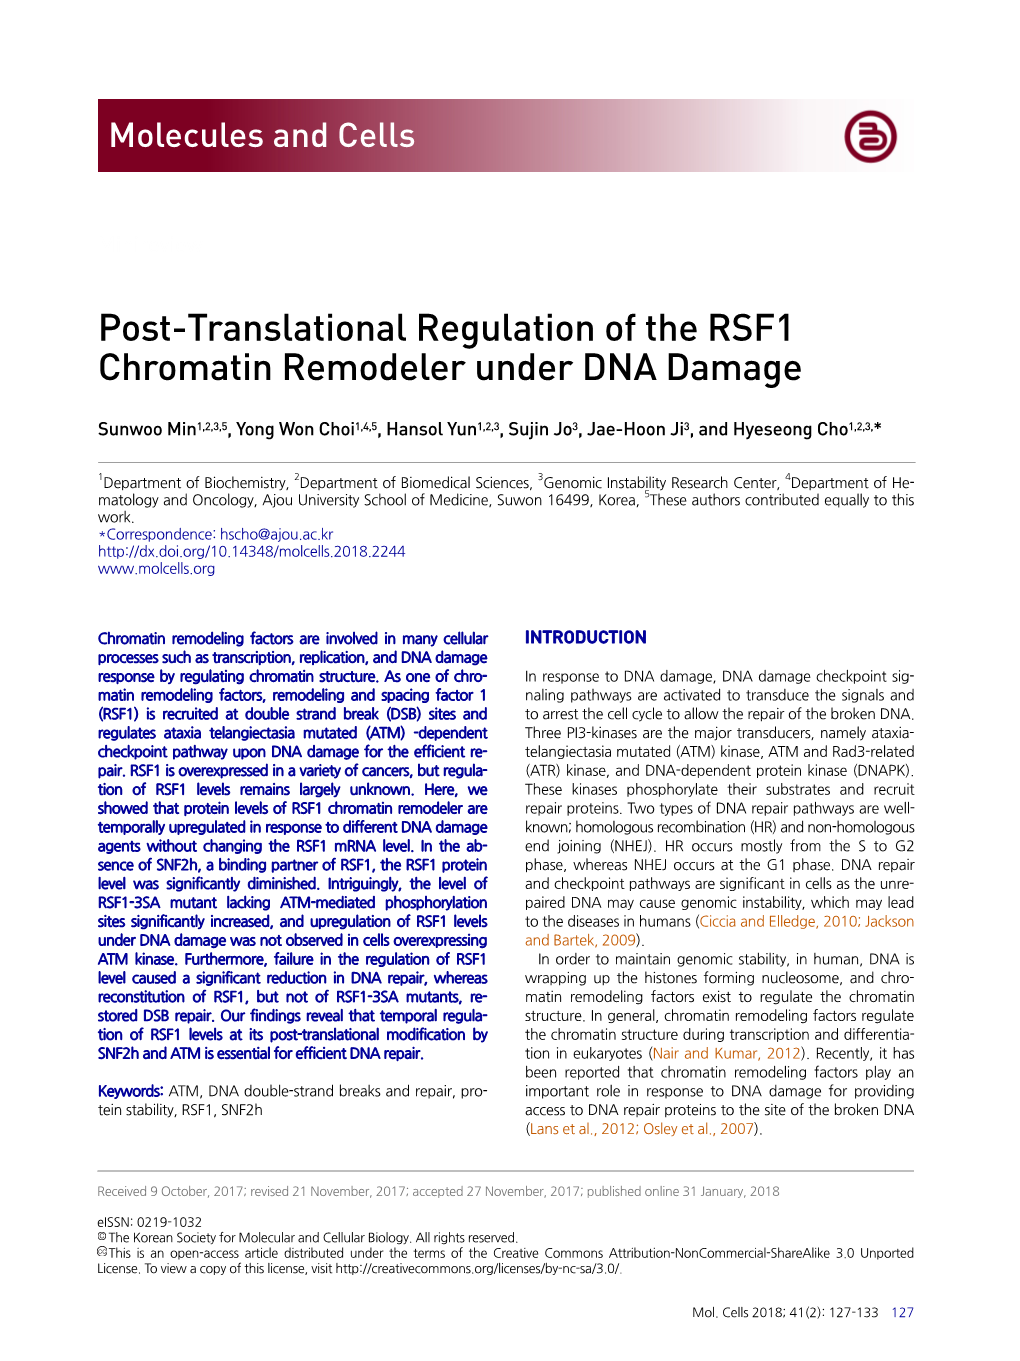 Post-Translational Regulation of the RSF1 Chromatin Remodeler Under DNA Damage